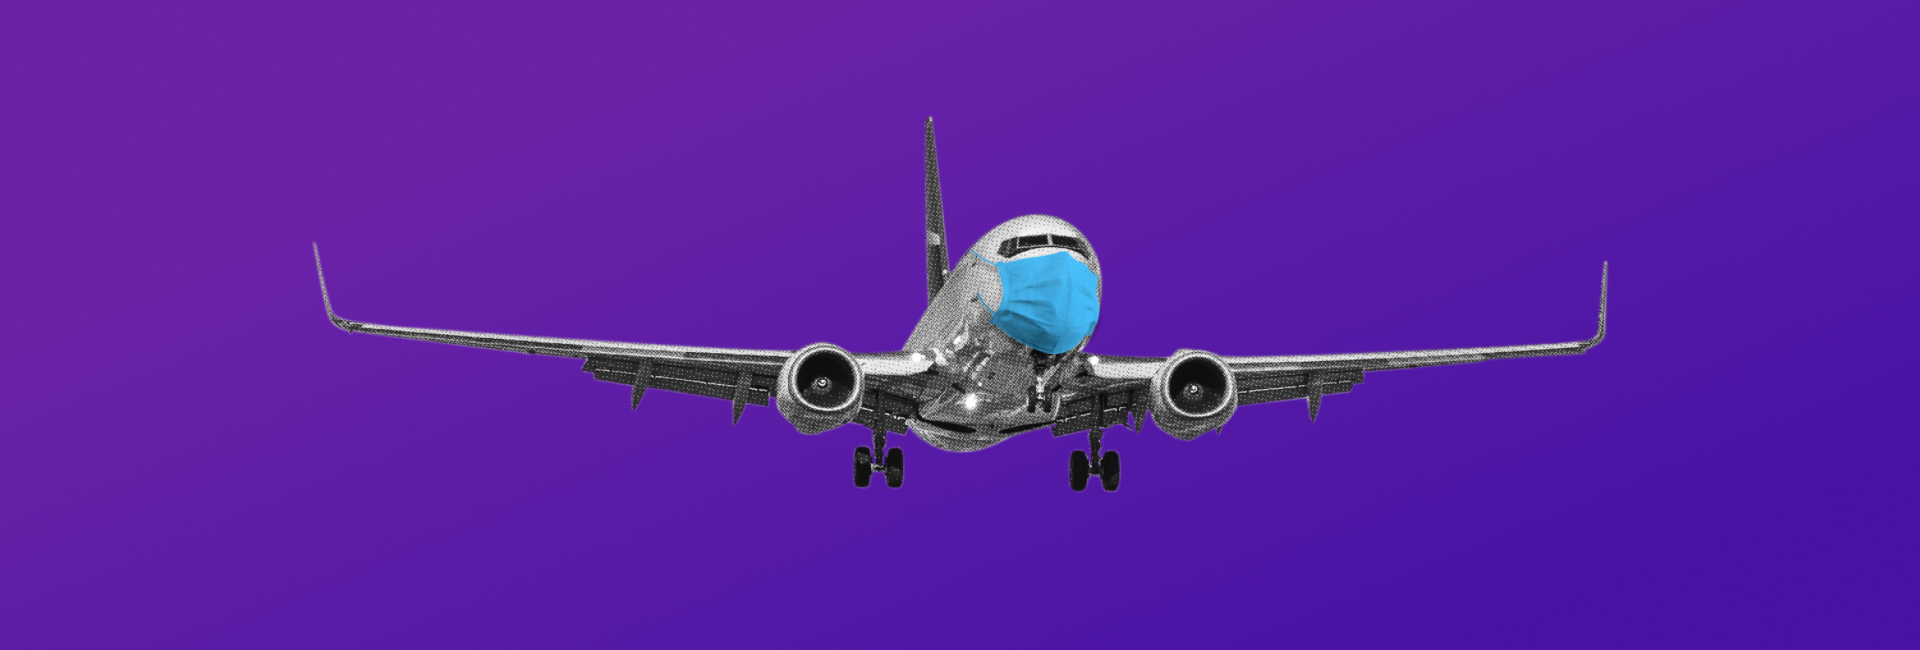 Sự thay đổi trong hành trình trải nghiệm khách hàng CX của ngành hàng không